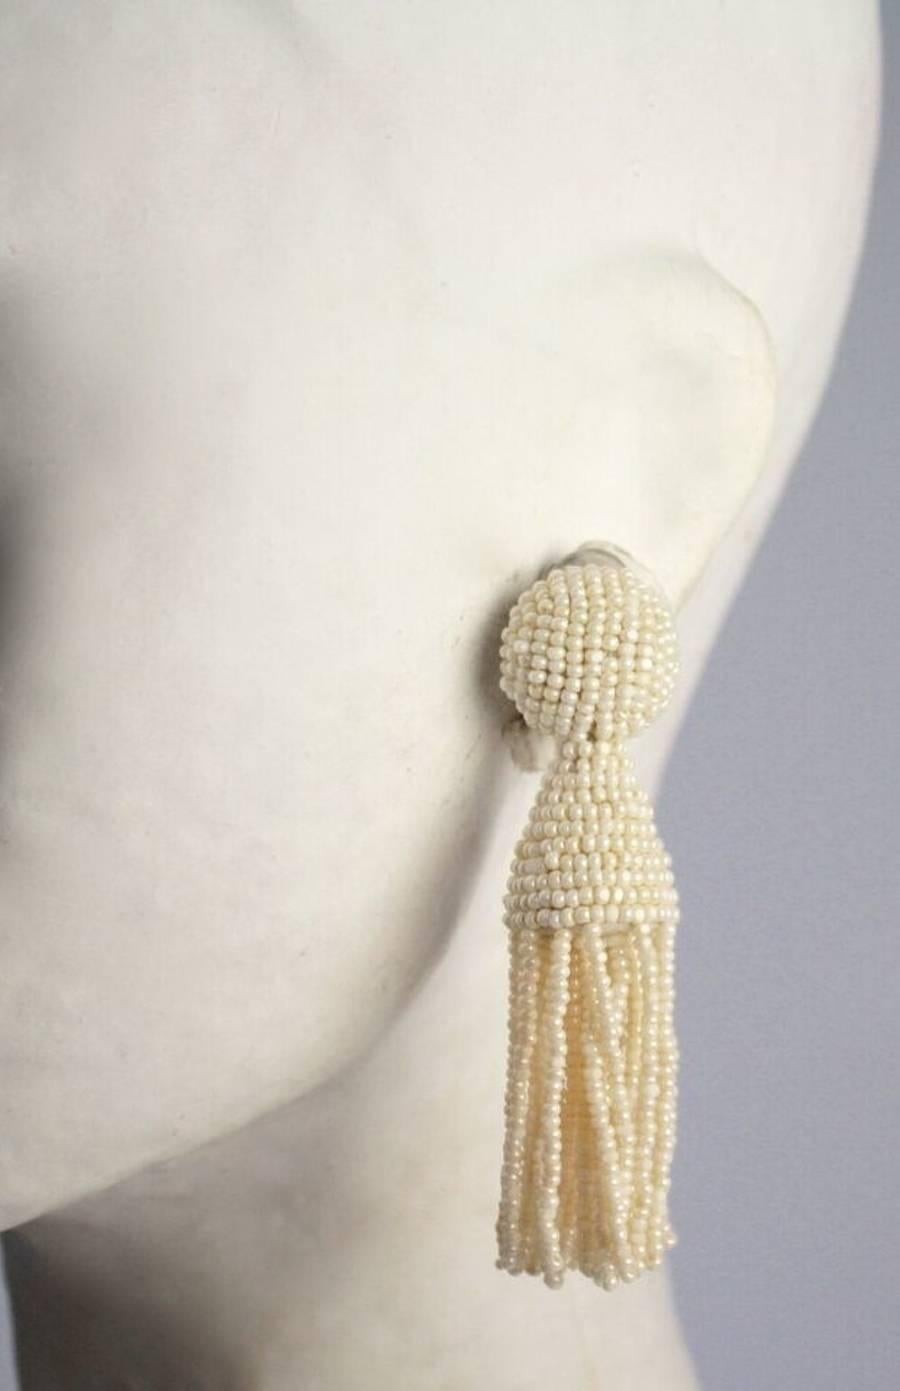 Ivory glass bead tassel clip earrings from Oscar de la Renta.   

3